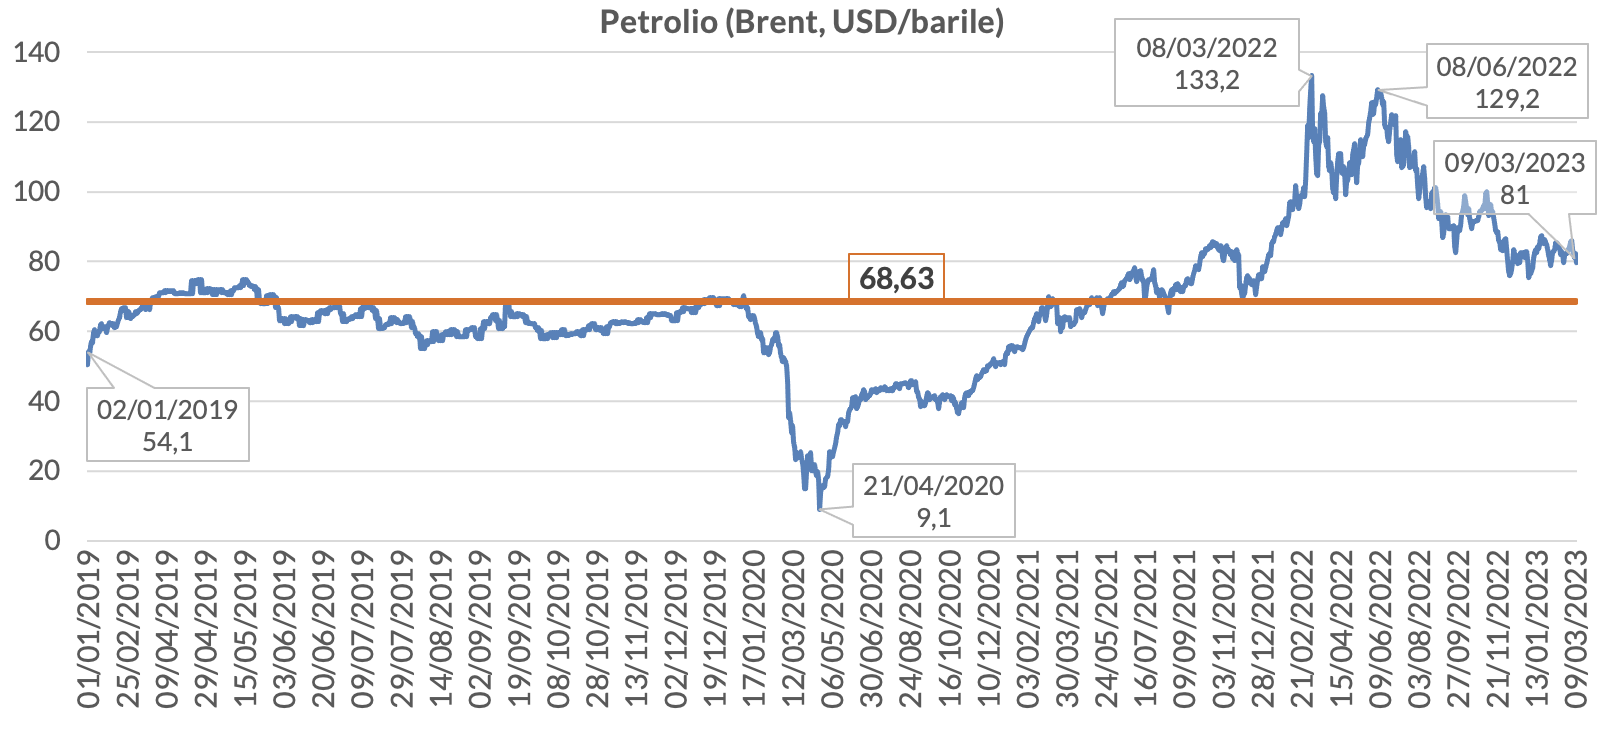 Figura 1 - Andamento nel tempo del costo del petrolio (dollari/barile)